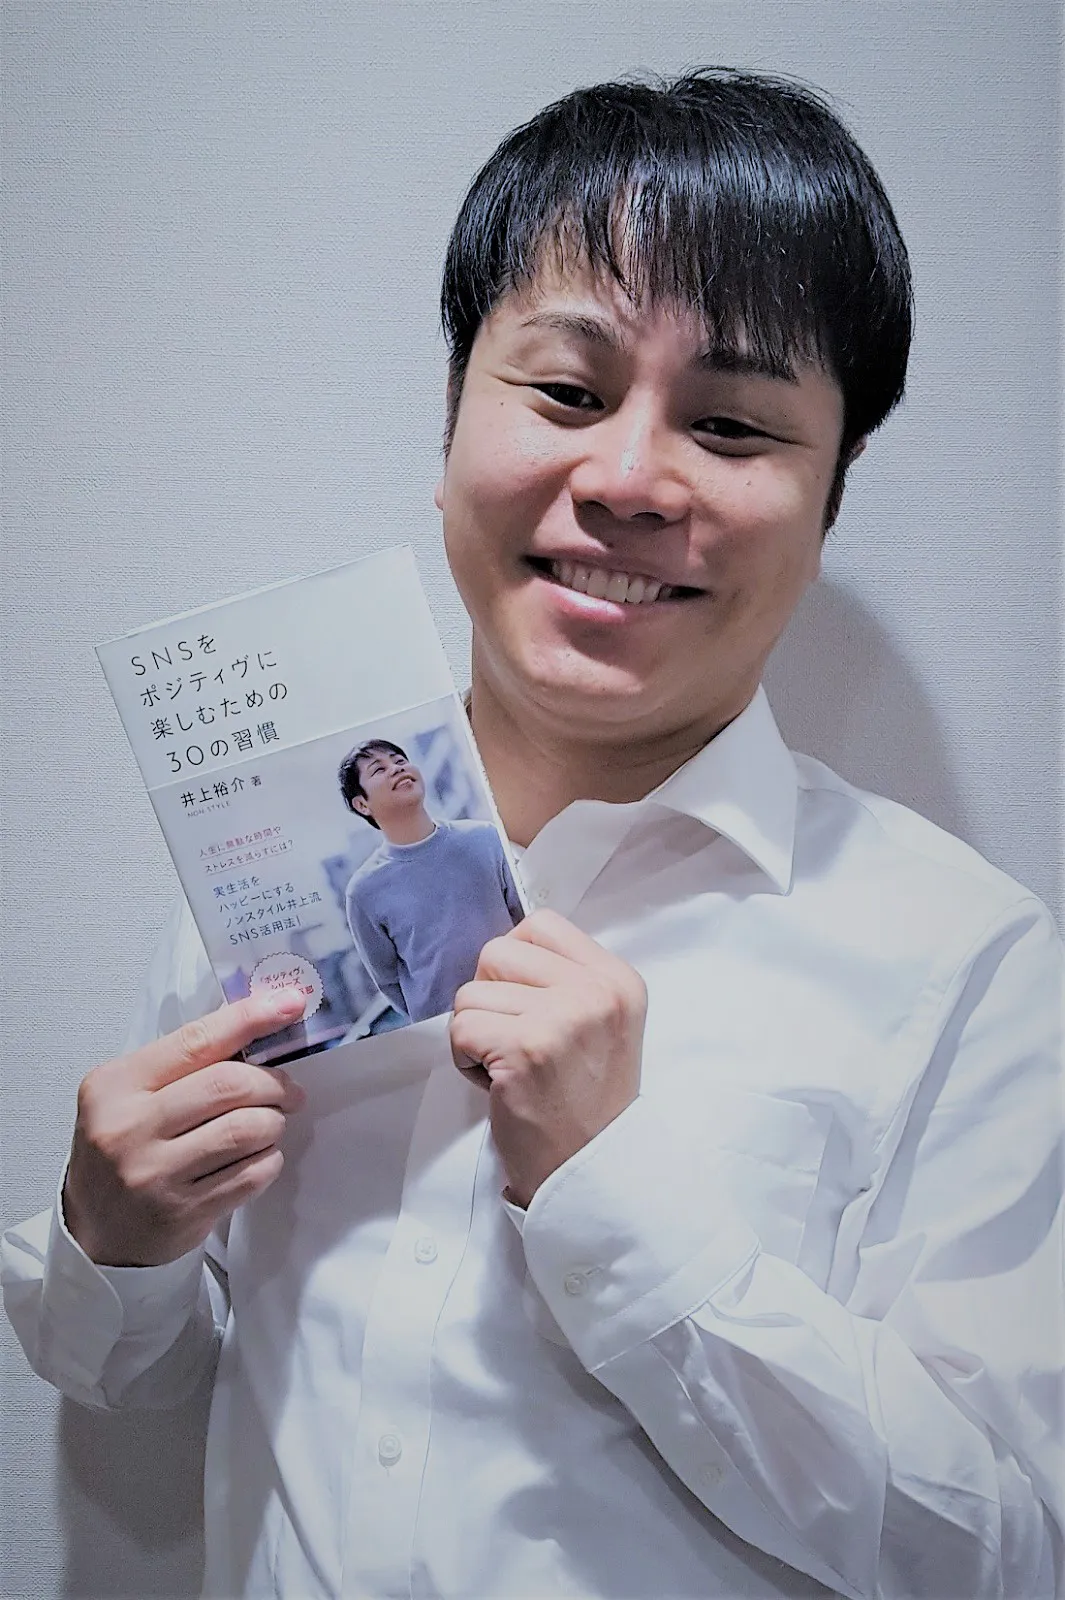 2019年春に発表したコラム本「SNSをポジティヴに楽しむための30の習慣」が好評を博しているNON STYLE・井上裕介